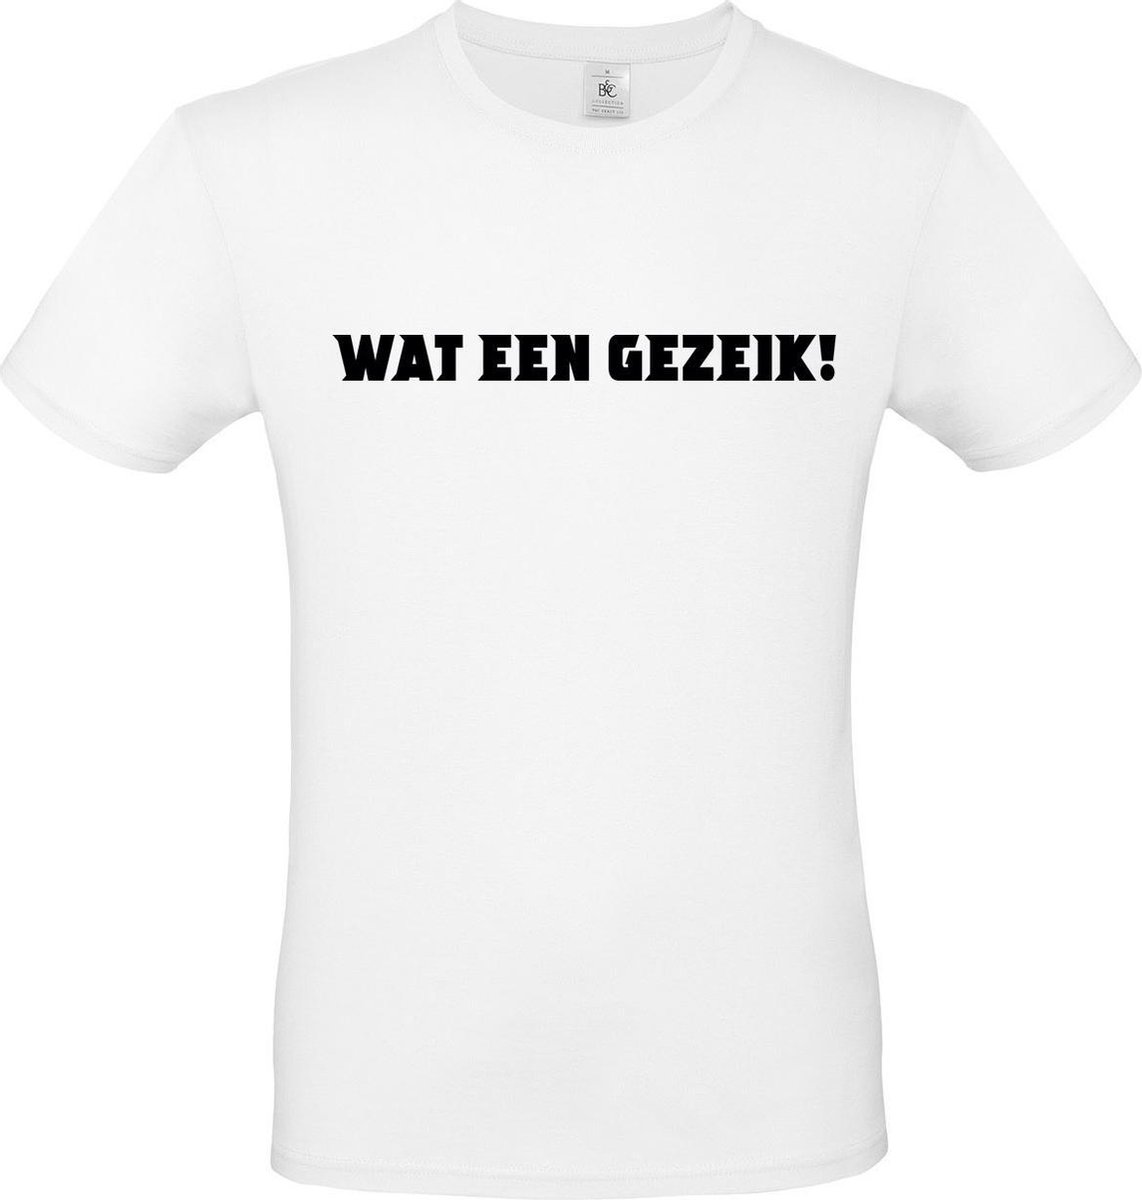 T-shirt met opdruk “Wat een gezeik”, Wit T-shirt met zwarte opdruk. Ken je hem uit Chateau Meiland?